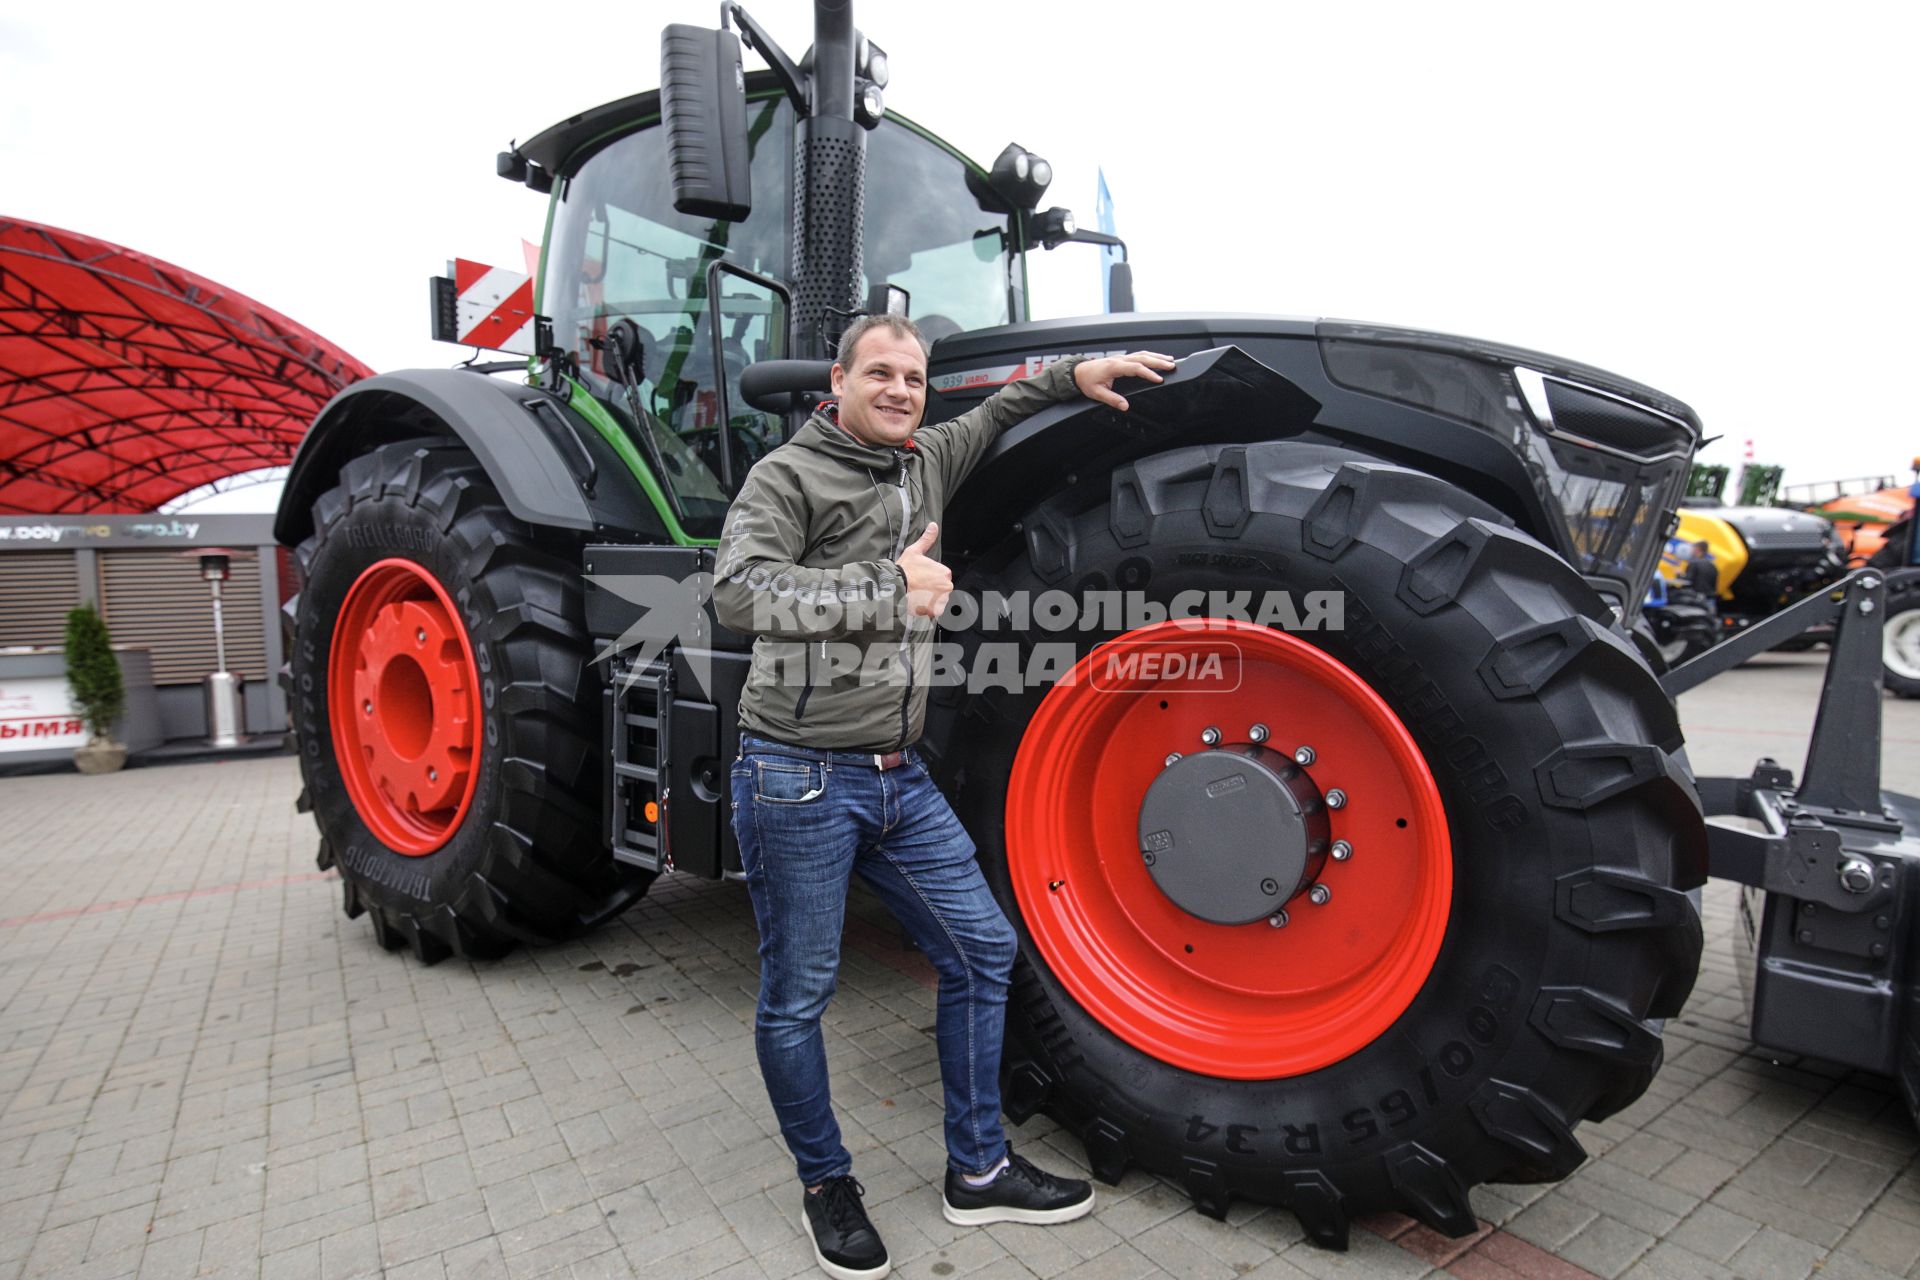 Минск. Трактор немецкого производителя Fendt редставлен на XXX Международной сельскохозяйственной выставке `Белагро-2020` на Футбольном манеже.